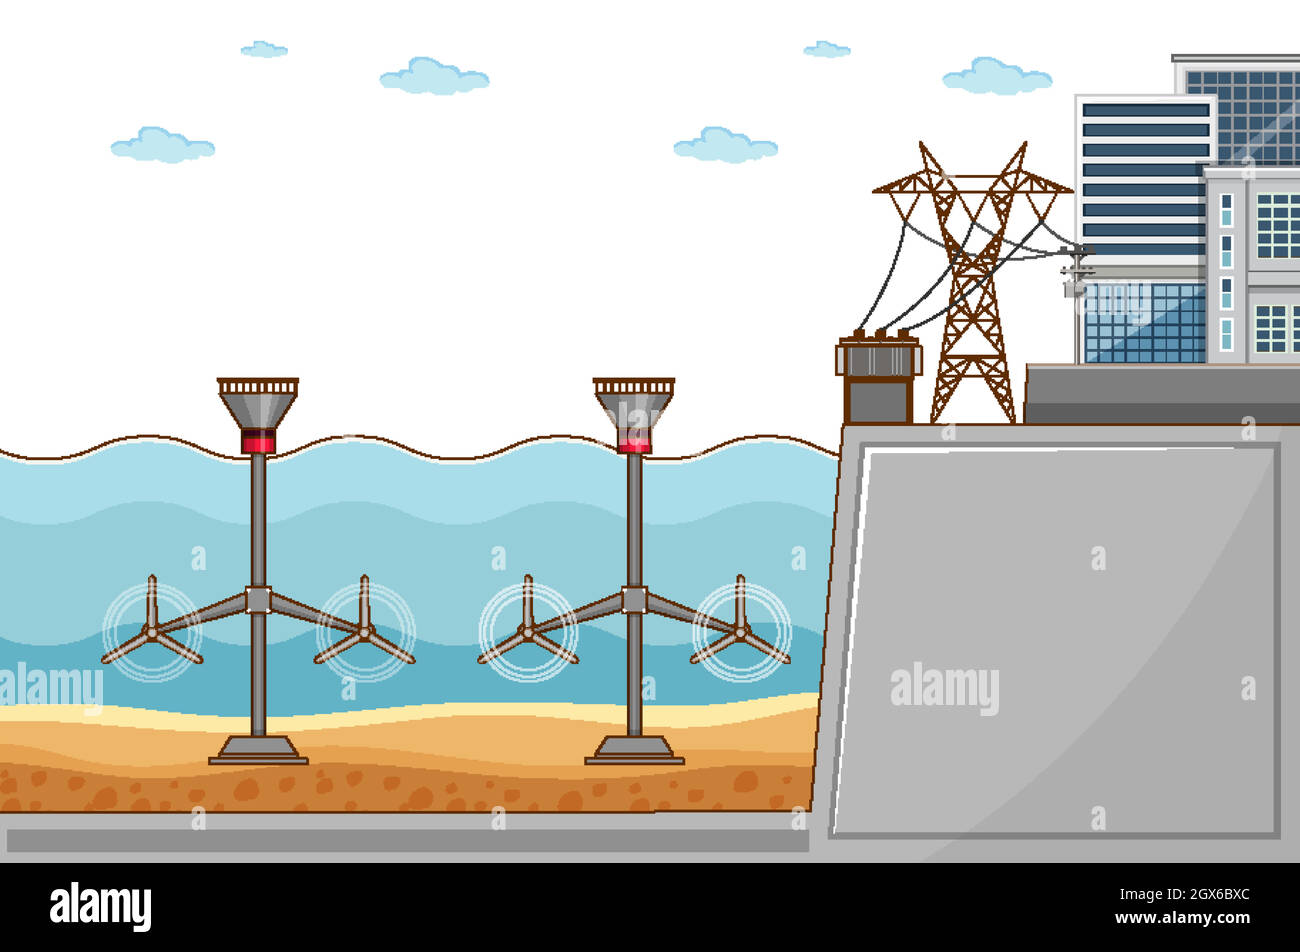 Schéma illustrant la production d'électricité par l'eau utilisée en ville Illustration de Vecteur